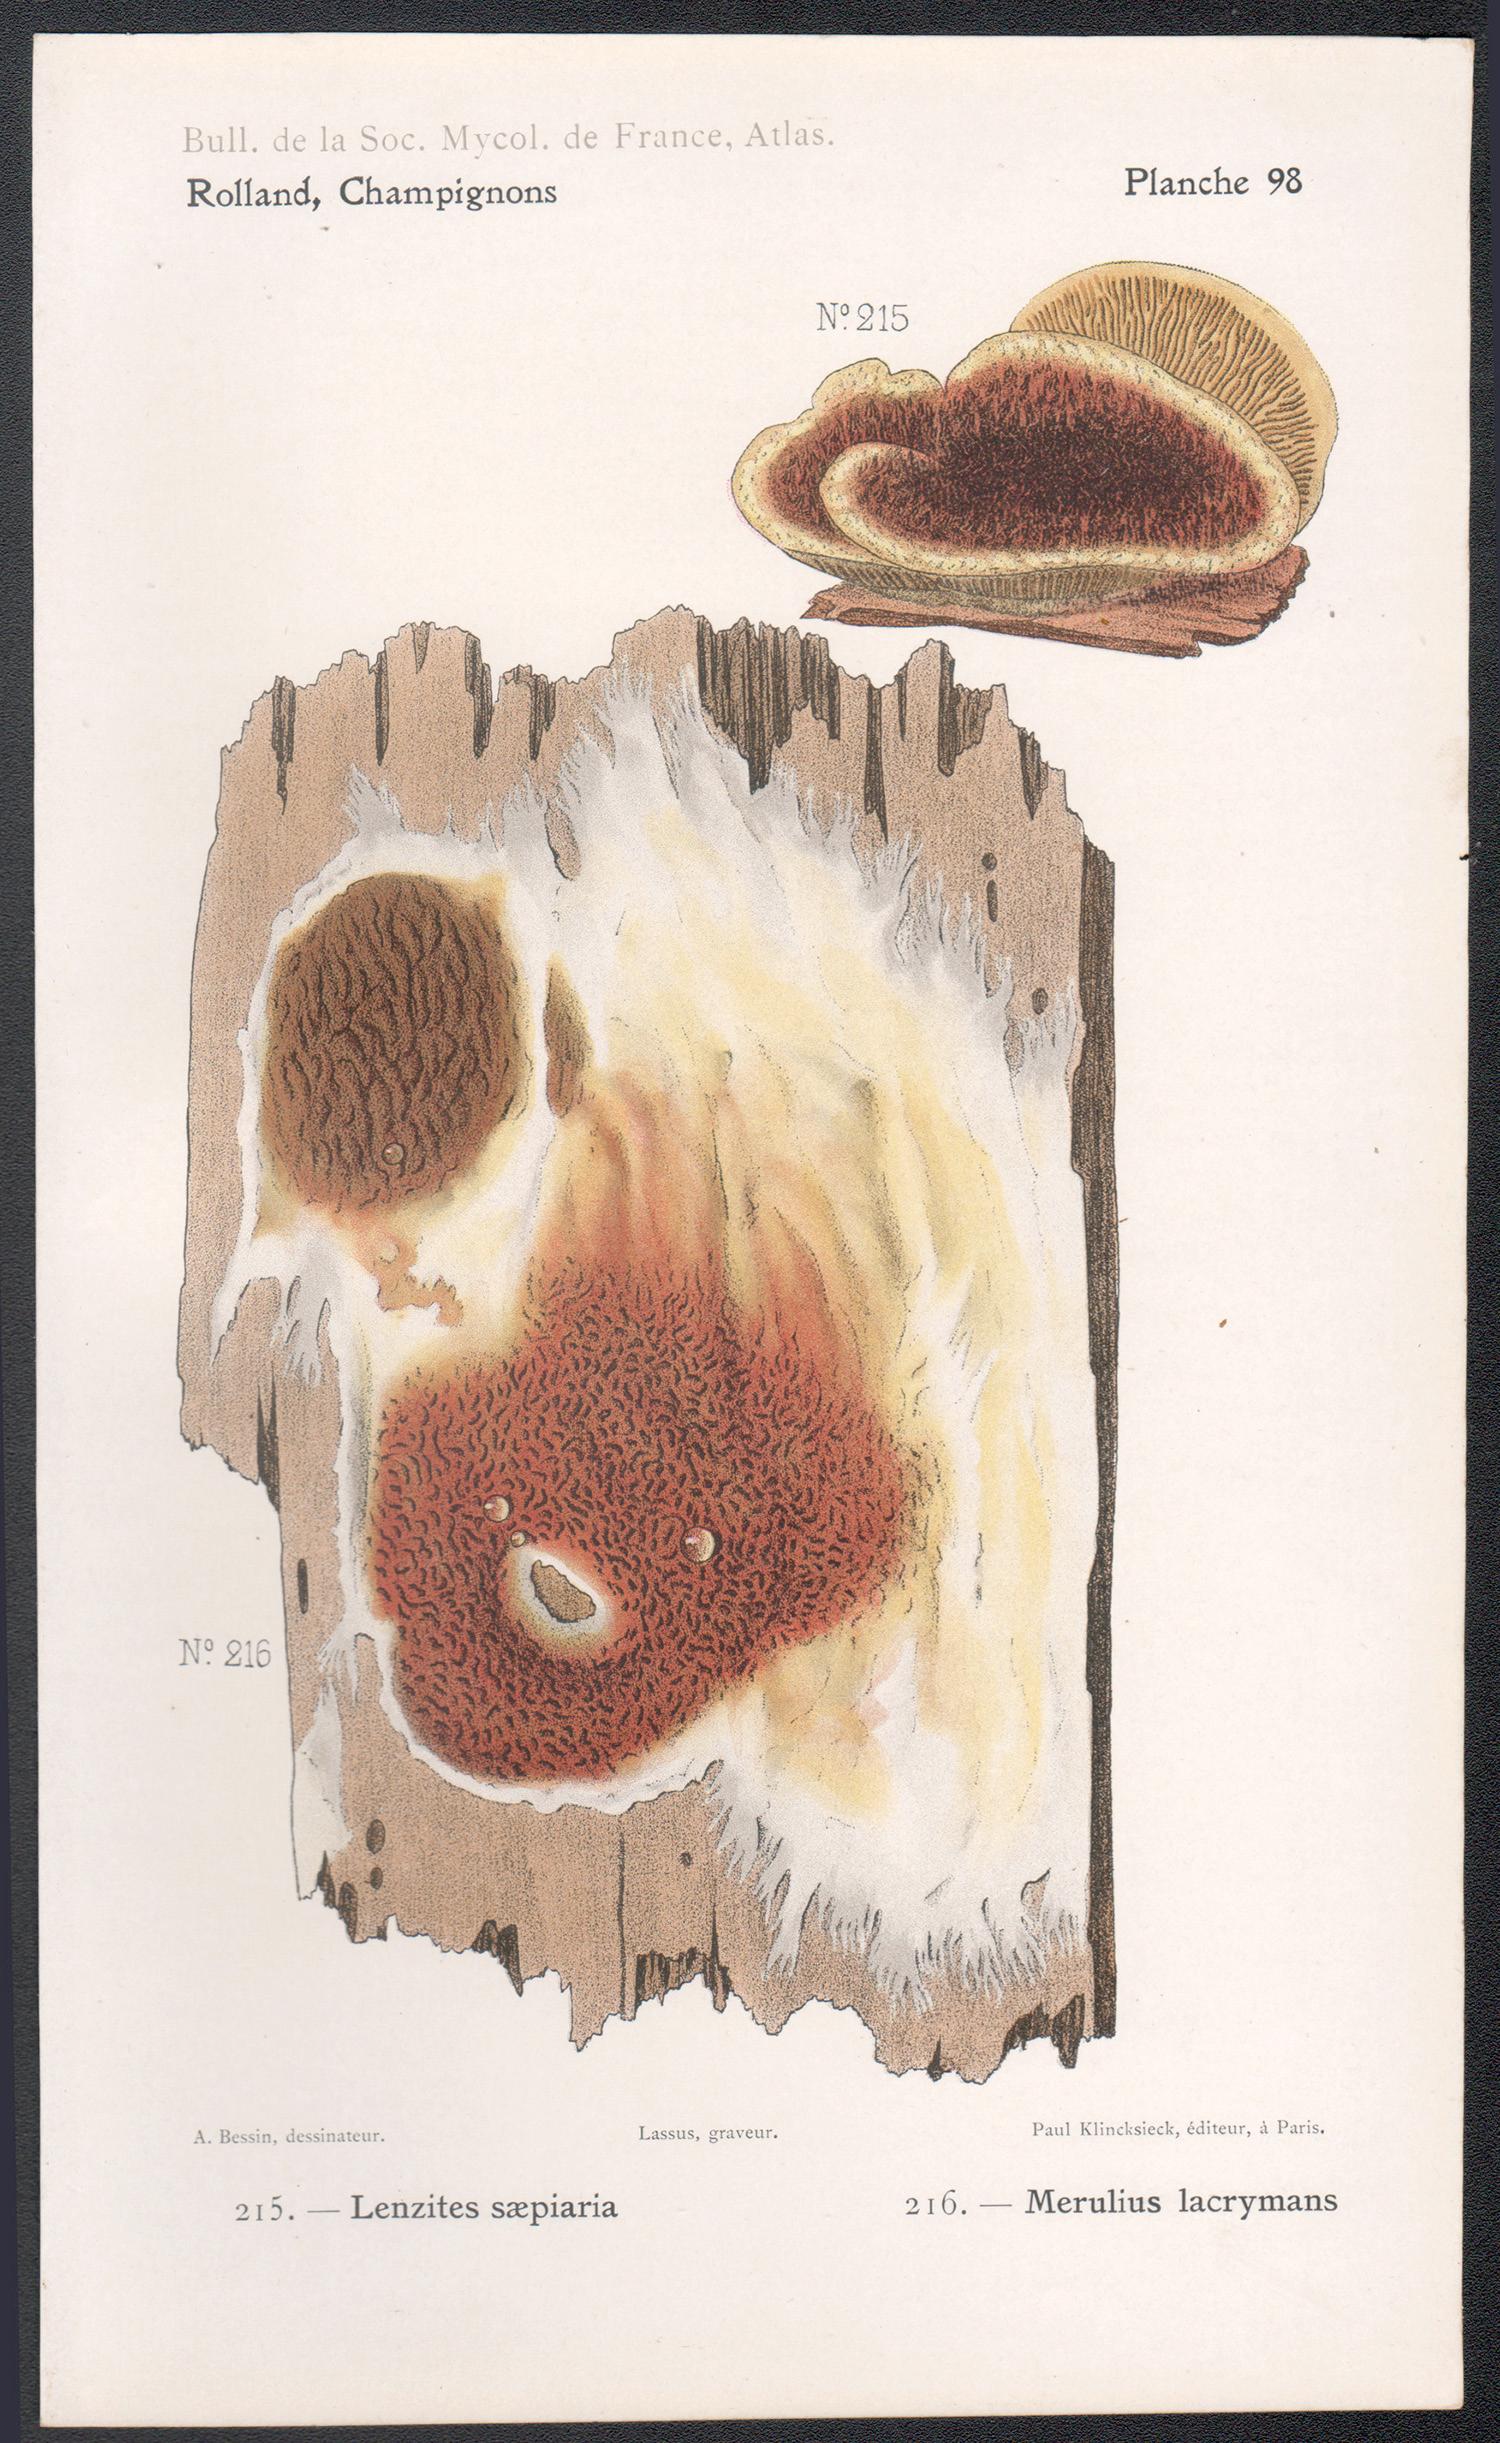 Champignons, chromolithographie française ancienne de champignons champignons, 1910 - Print de Lassus after Aimé Bessin